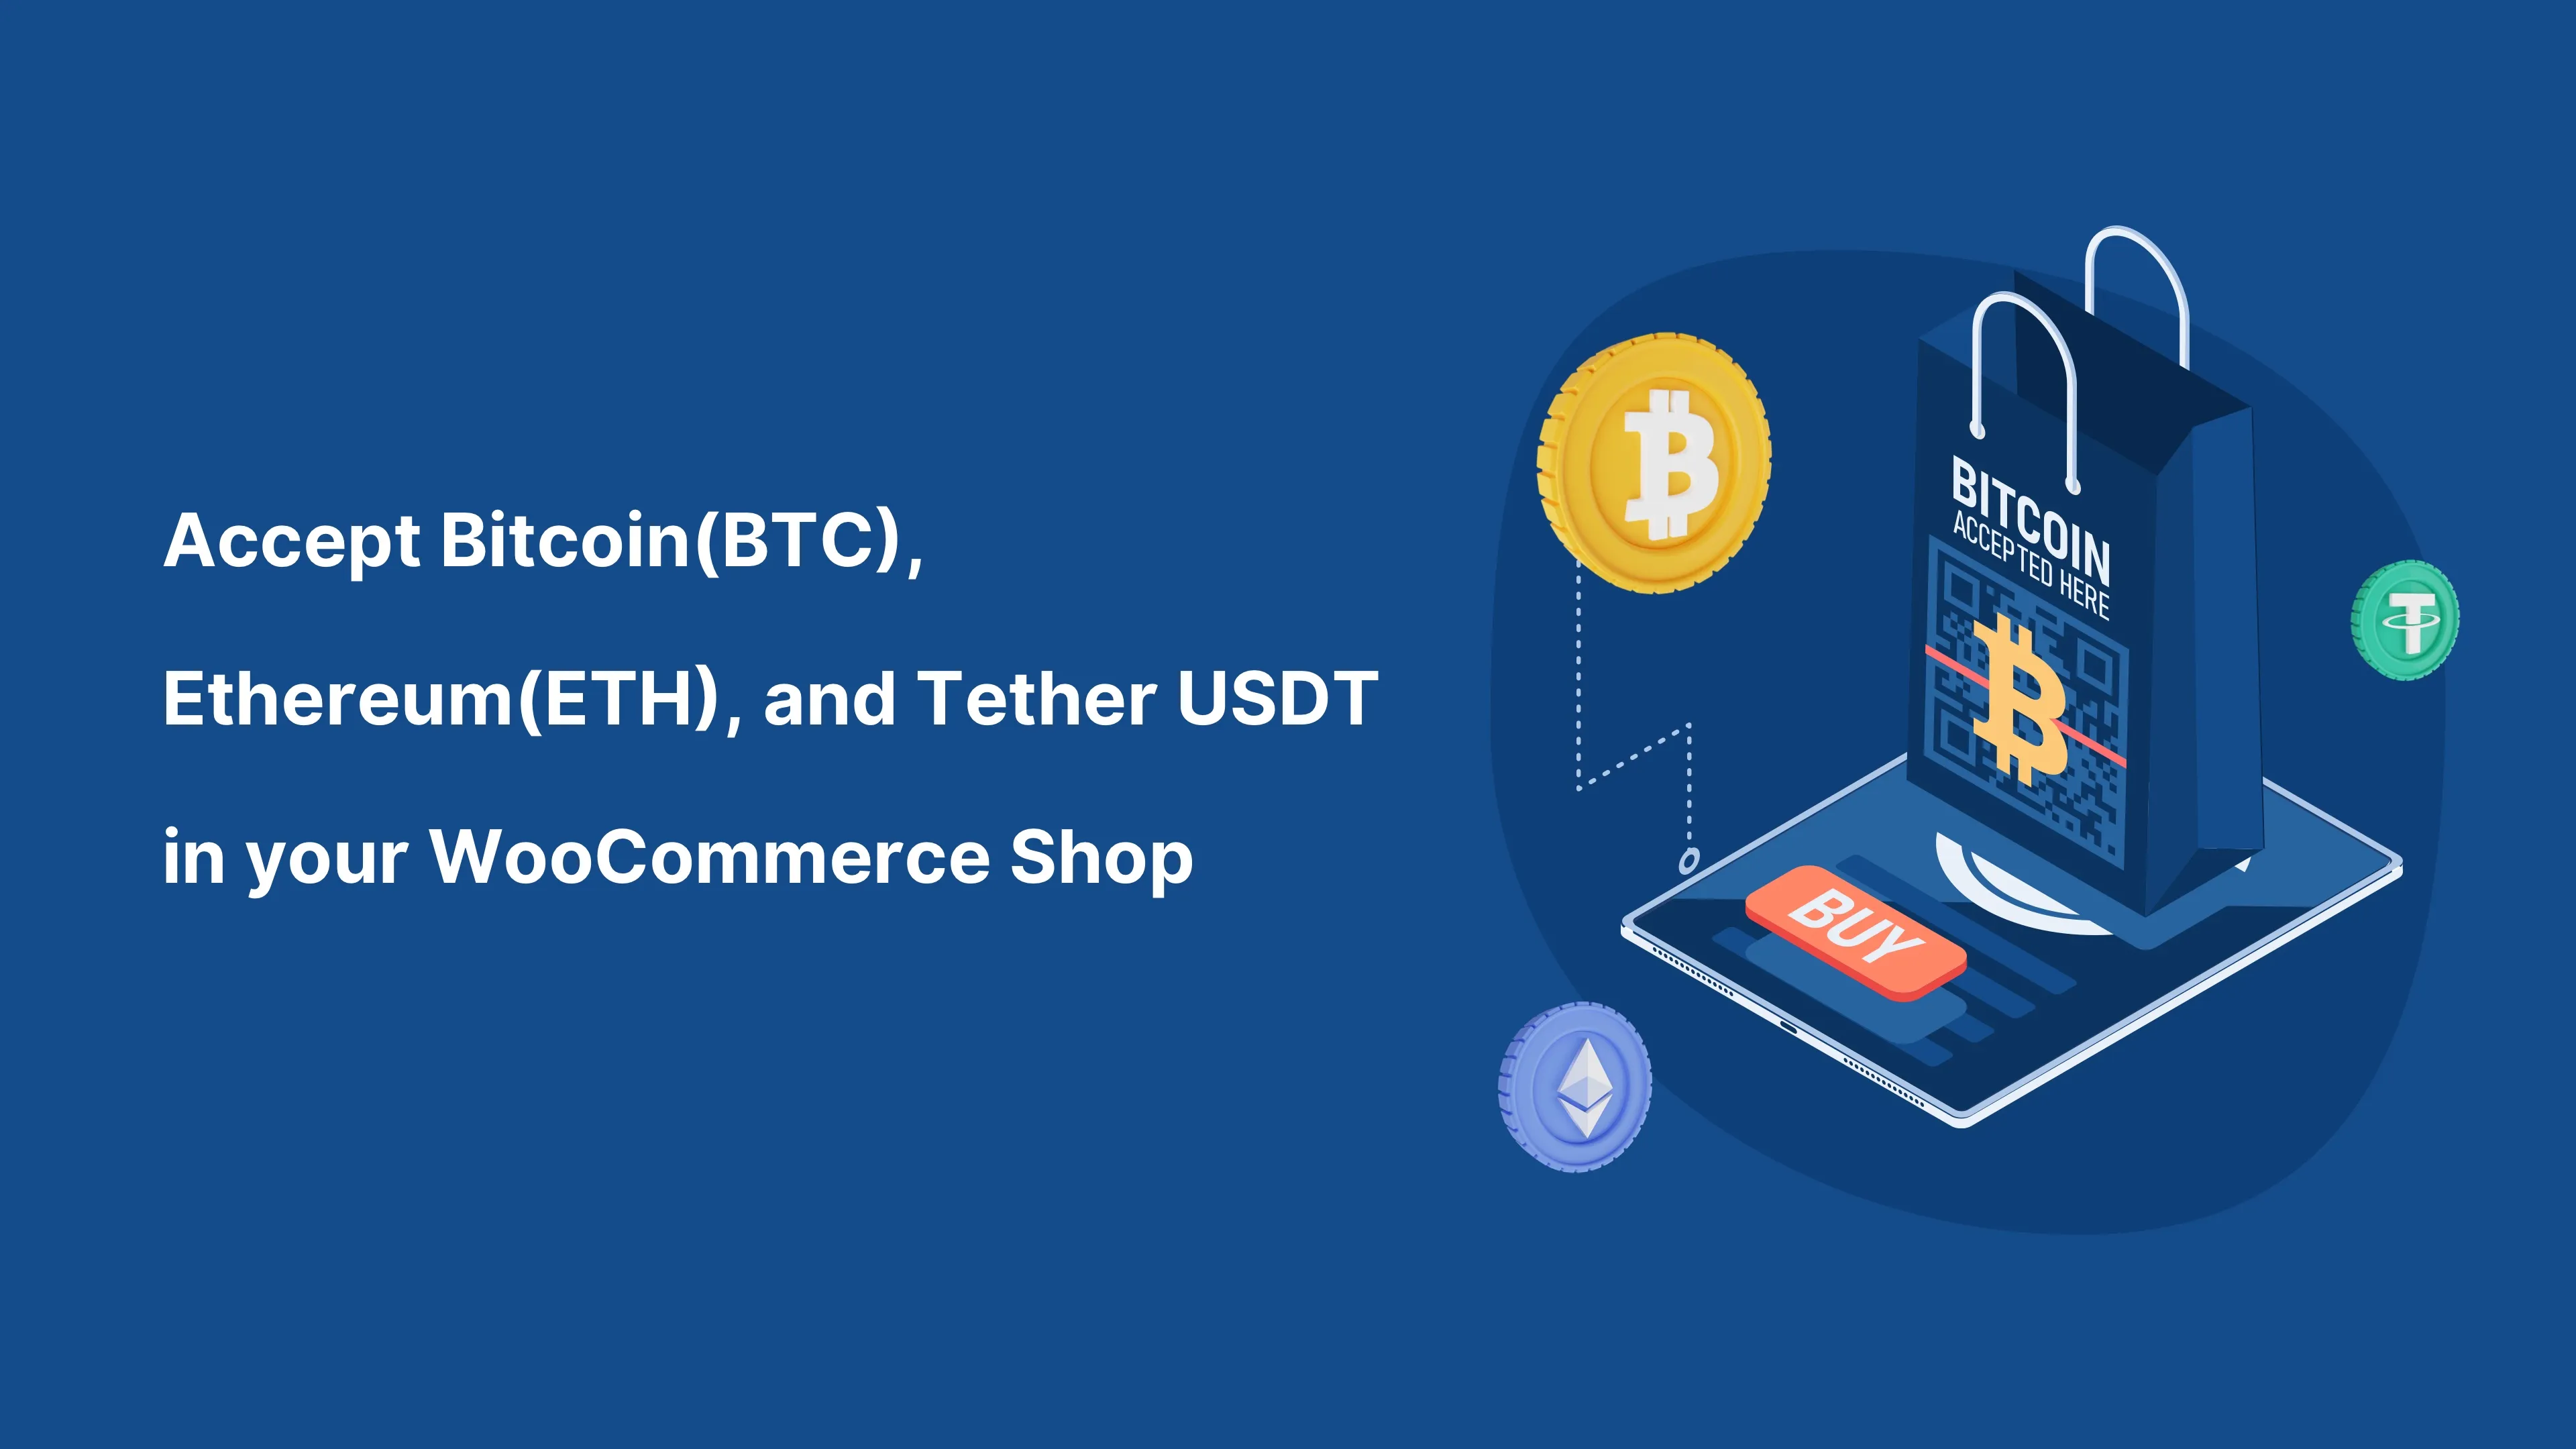 Pieņemiet Bitcoin (BTC) un jebkuru kriptovalūtu savā WooCommerce veikalā